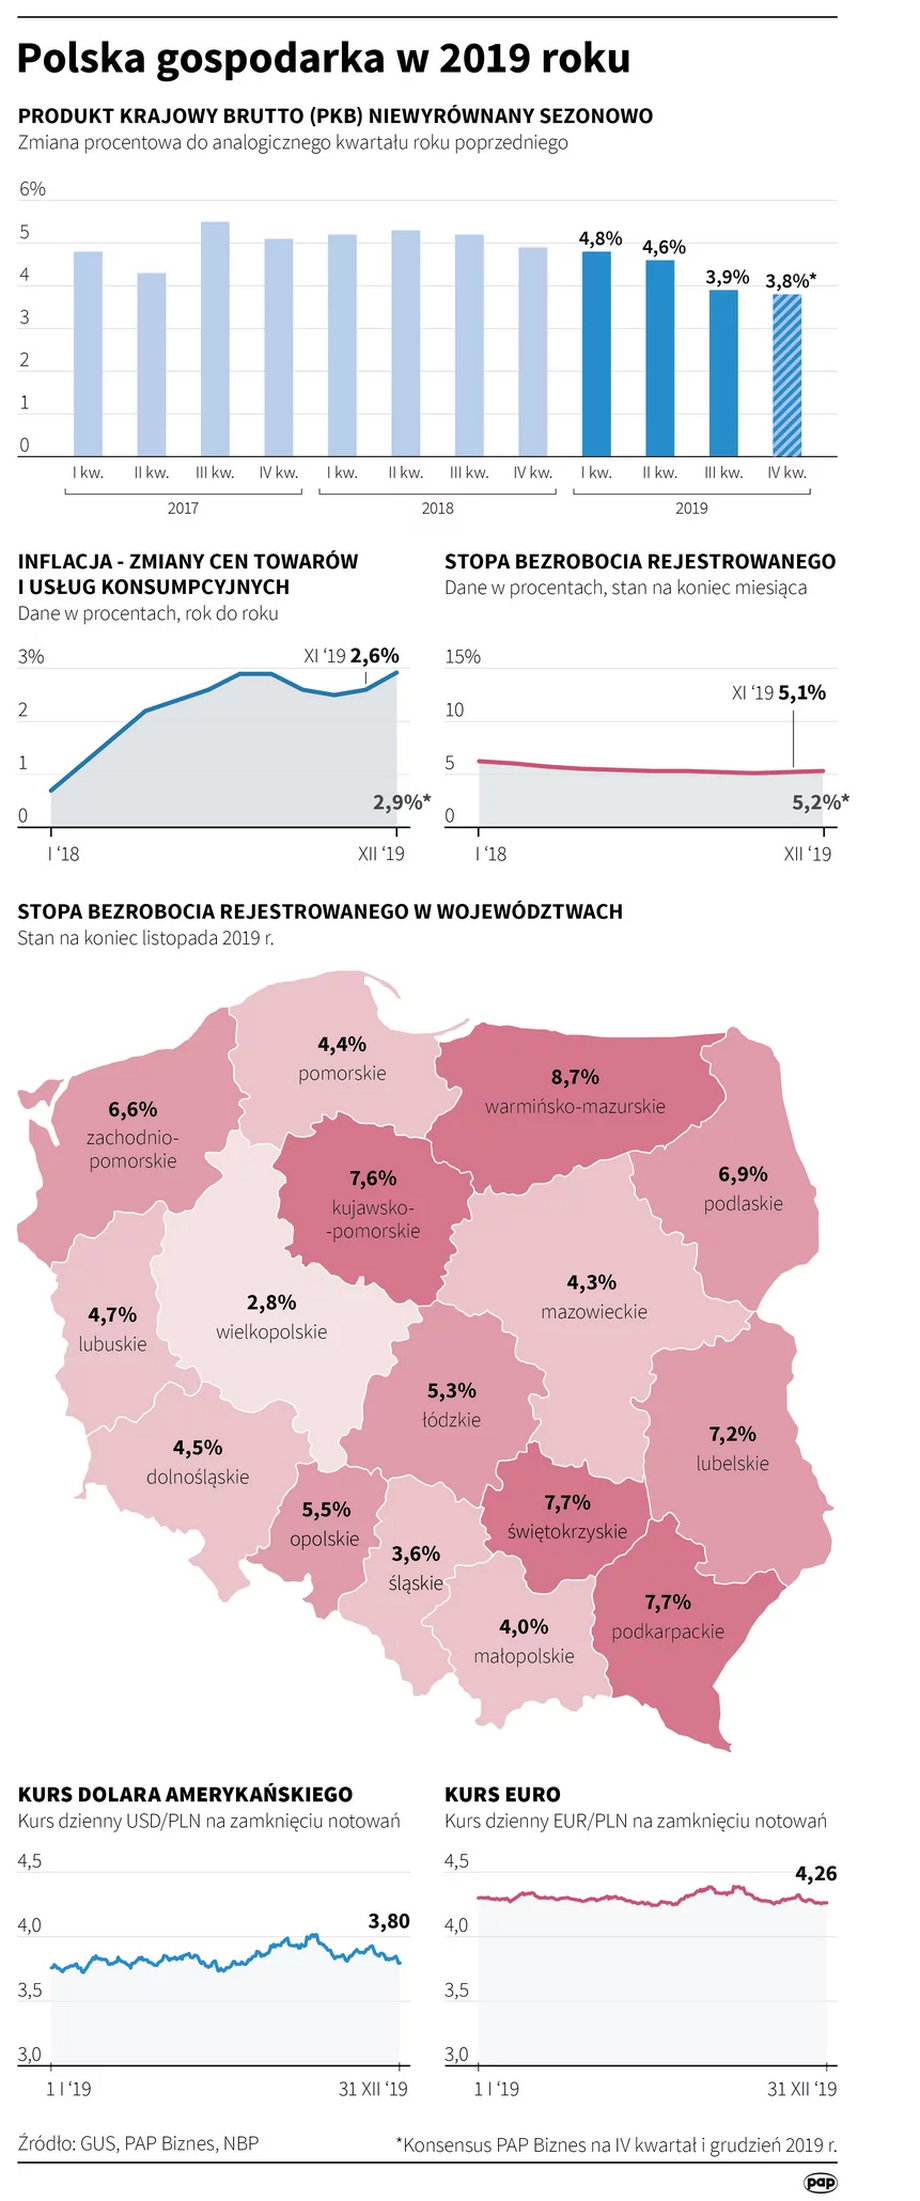 Sześć wykresów opisujących gospodarkę Polski w 2019 roku